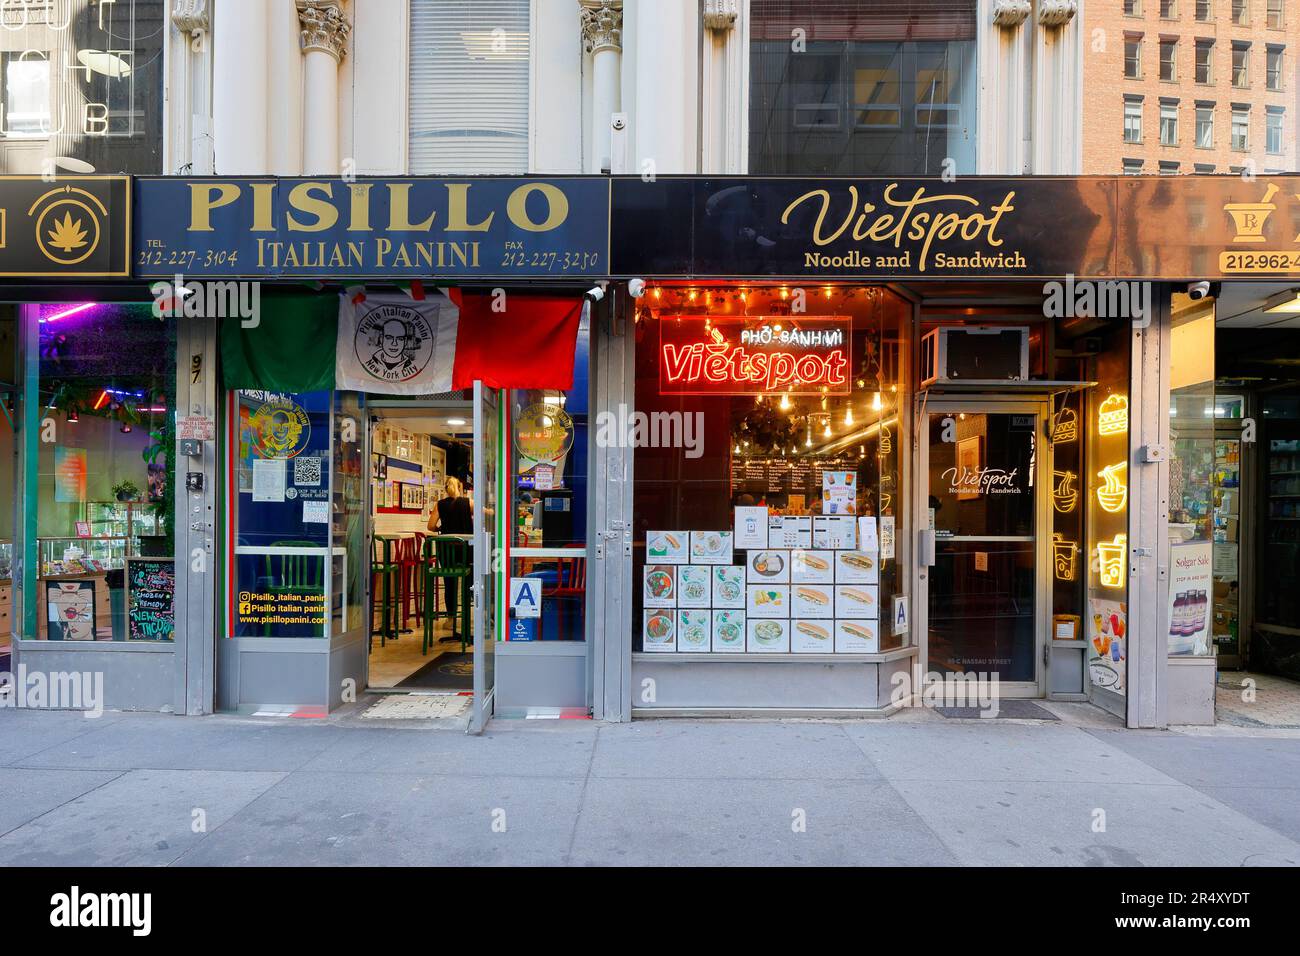 Vietspot, 99 Nassau St, New York, Pissillo, 97 Nassau St, Foto del negozio di New York di un vietnamita e di un panino italiano a Lower Manhattan. Foto Stock